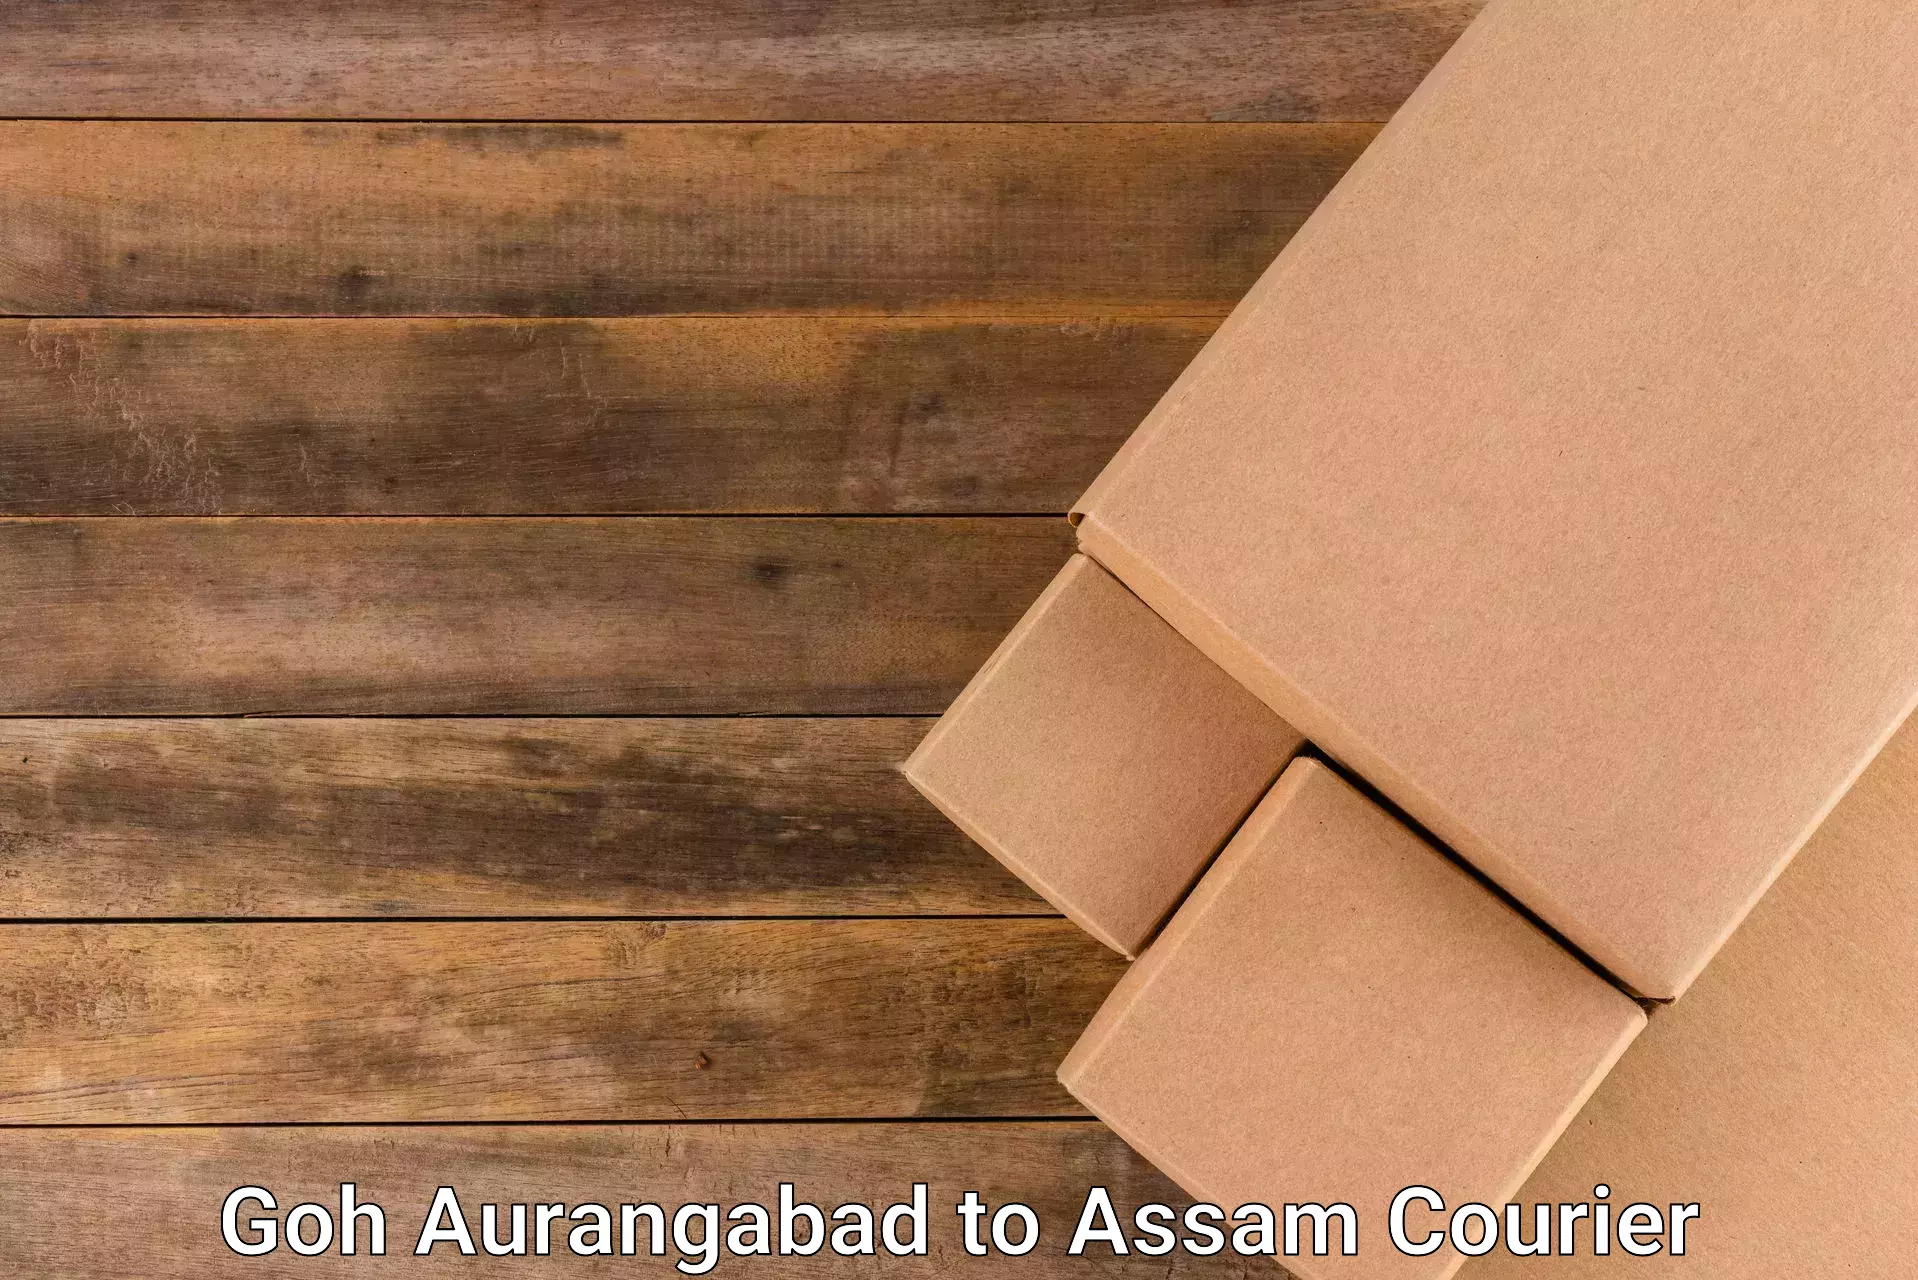 Express courier capabilities Goh Aurangabad to Amoni